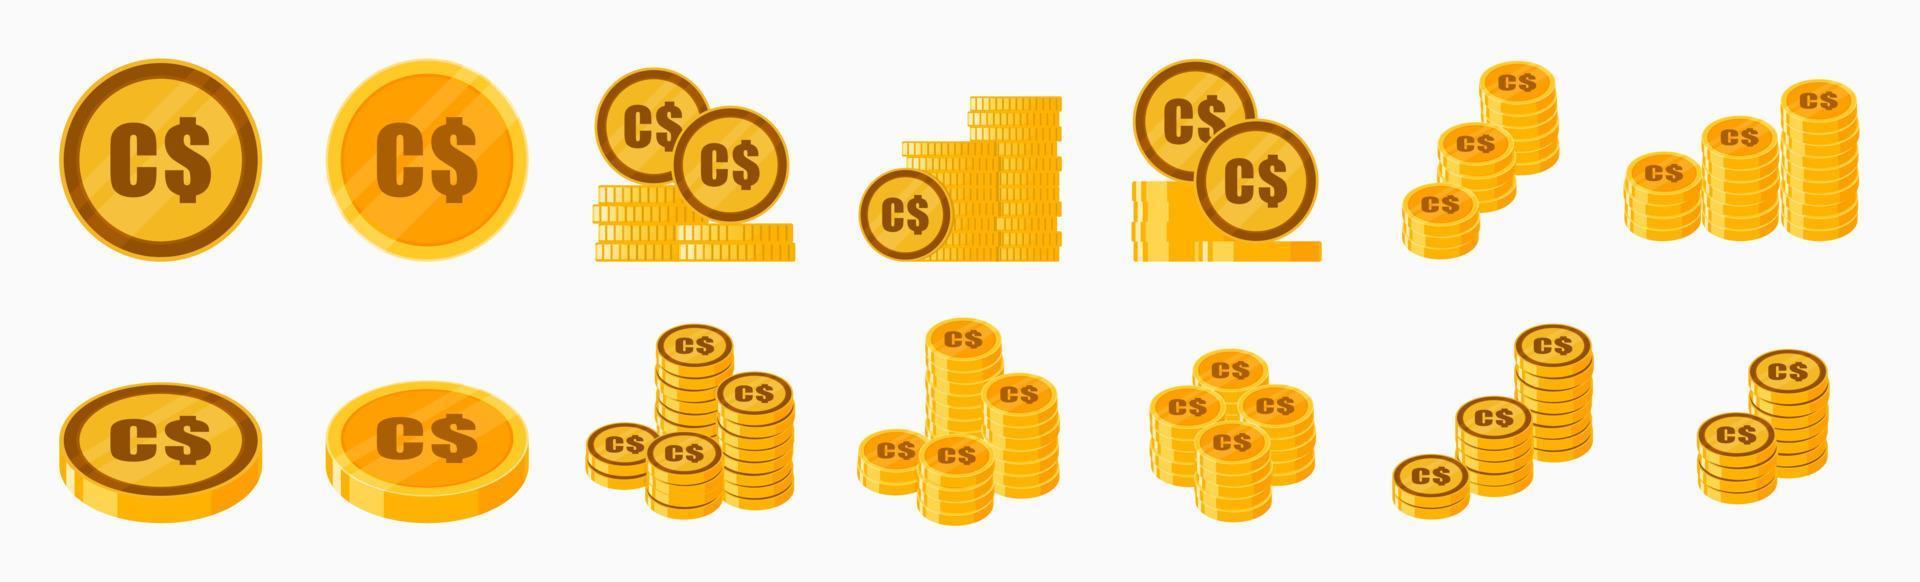 conjunto de iconos de moneda de dólar canadiense vector